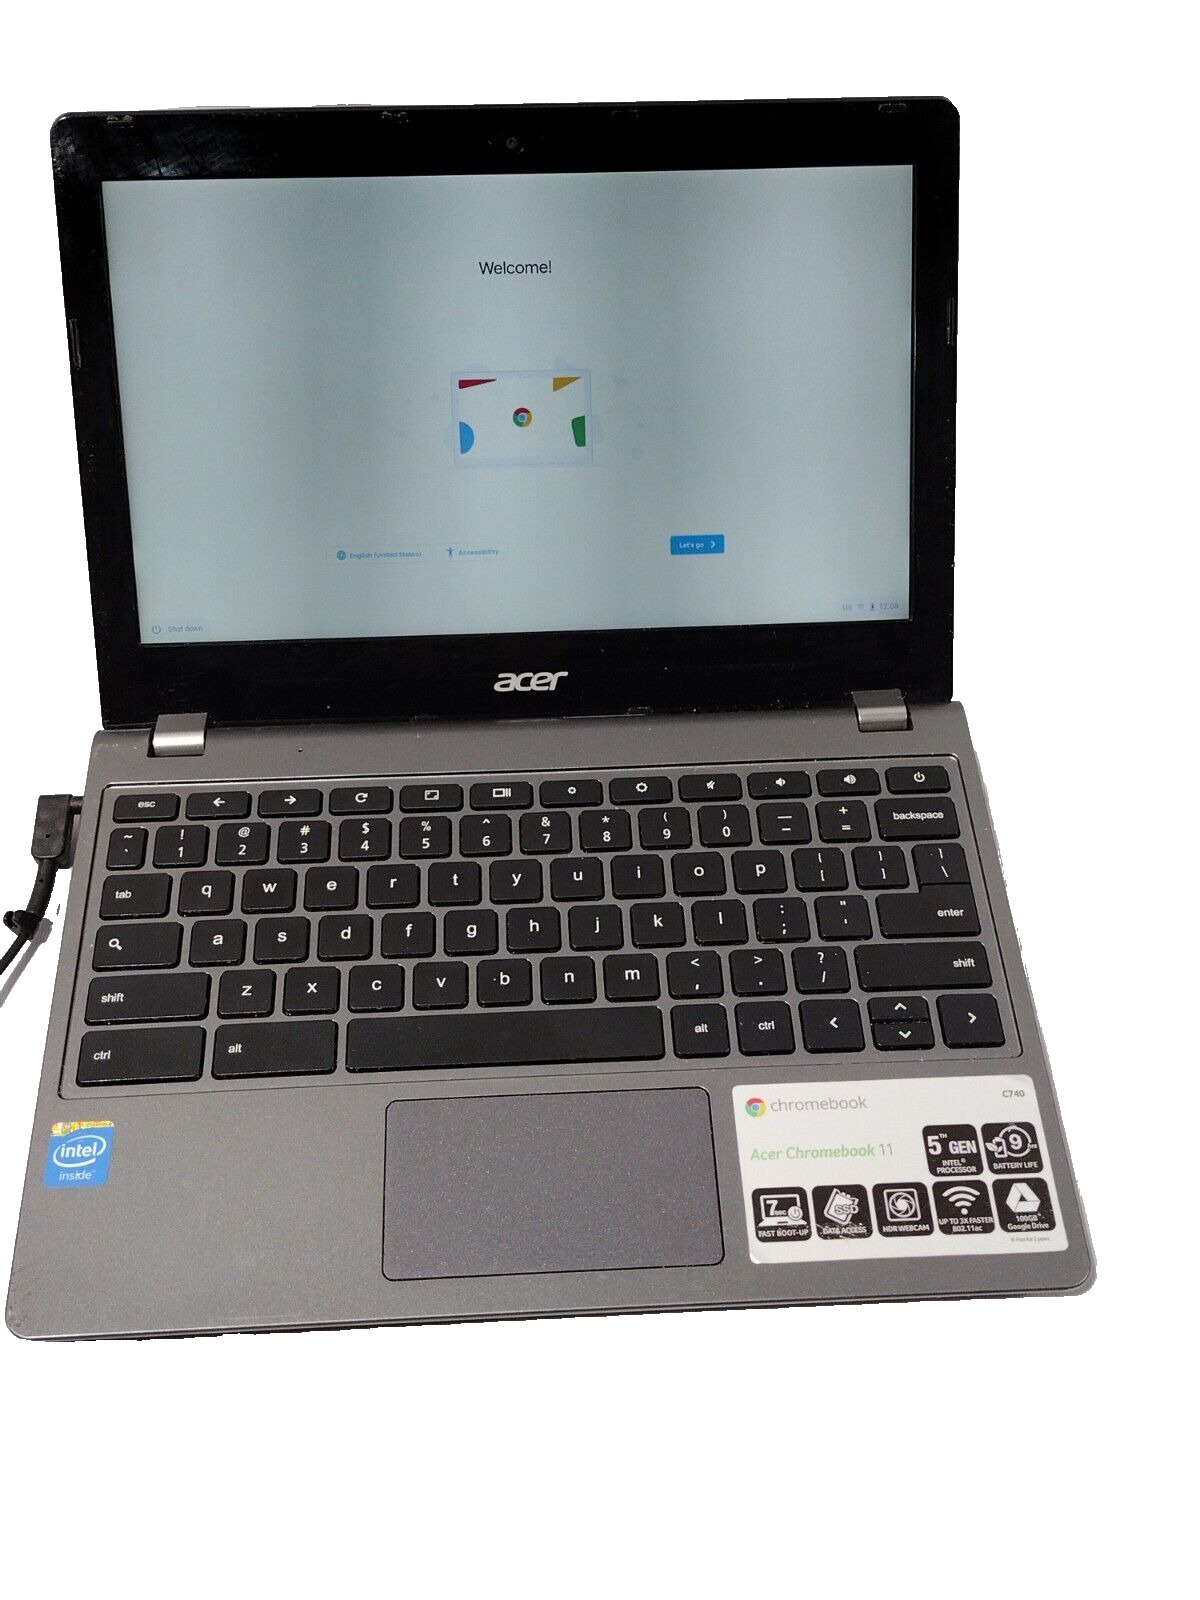 Acer Chromebook 11 C740 32GB HDD 4GB RAM Intel Celeron 3205U @ 1.50GHz (45807)